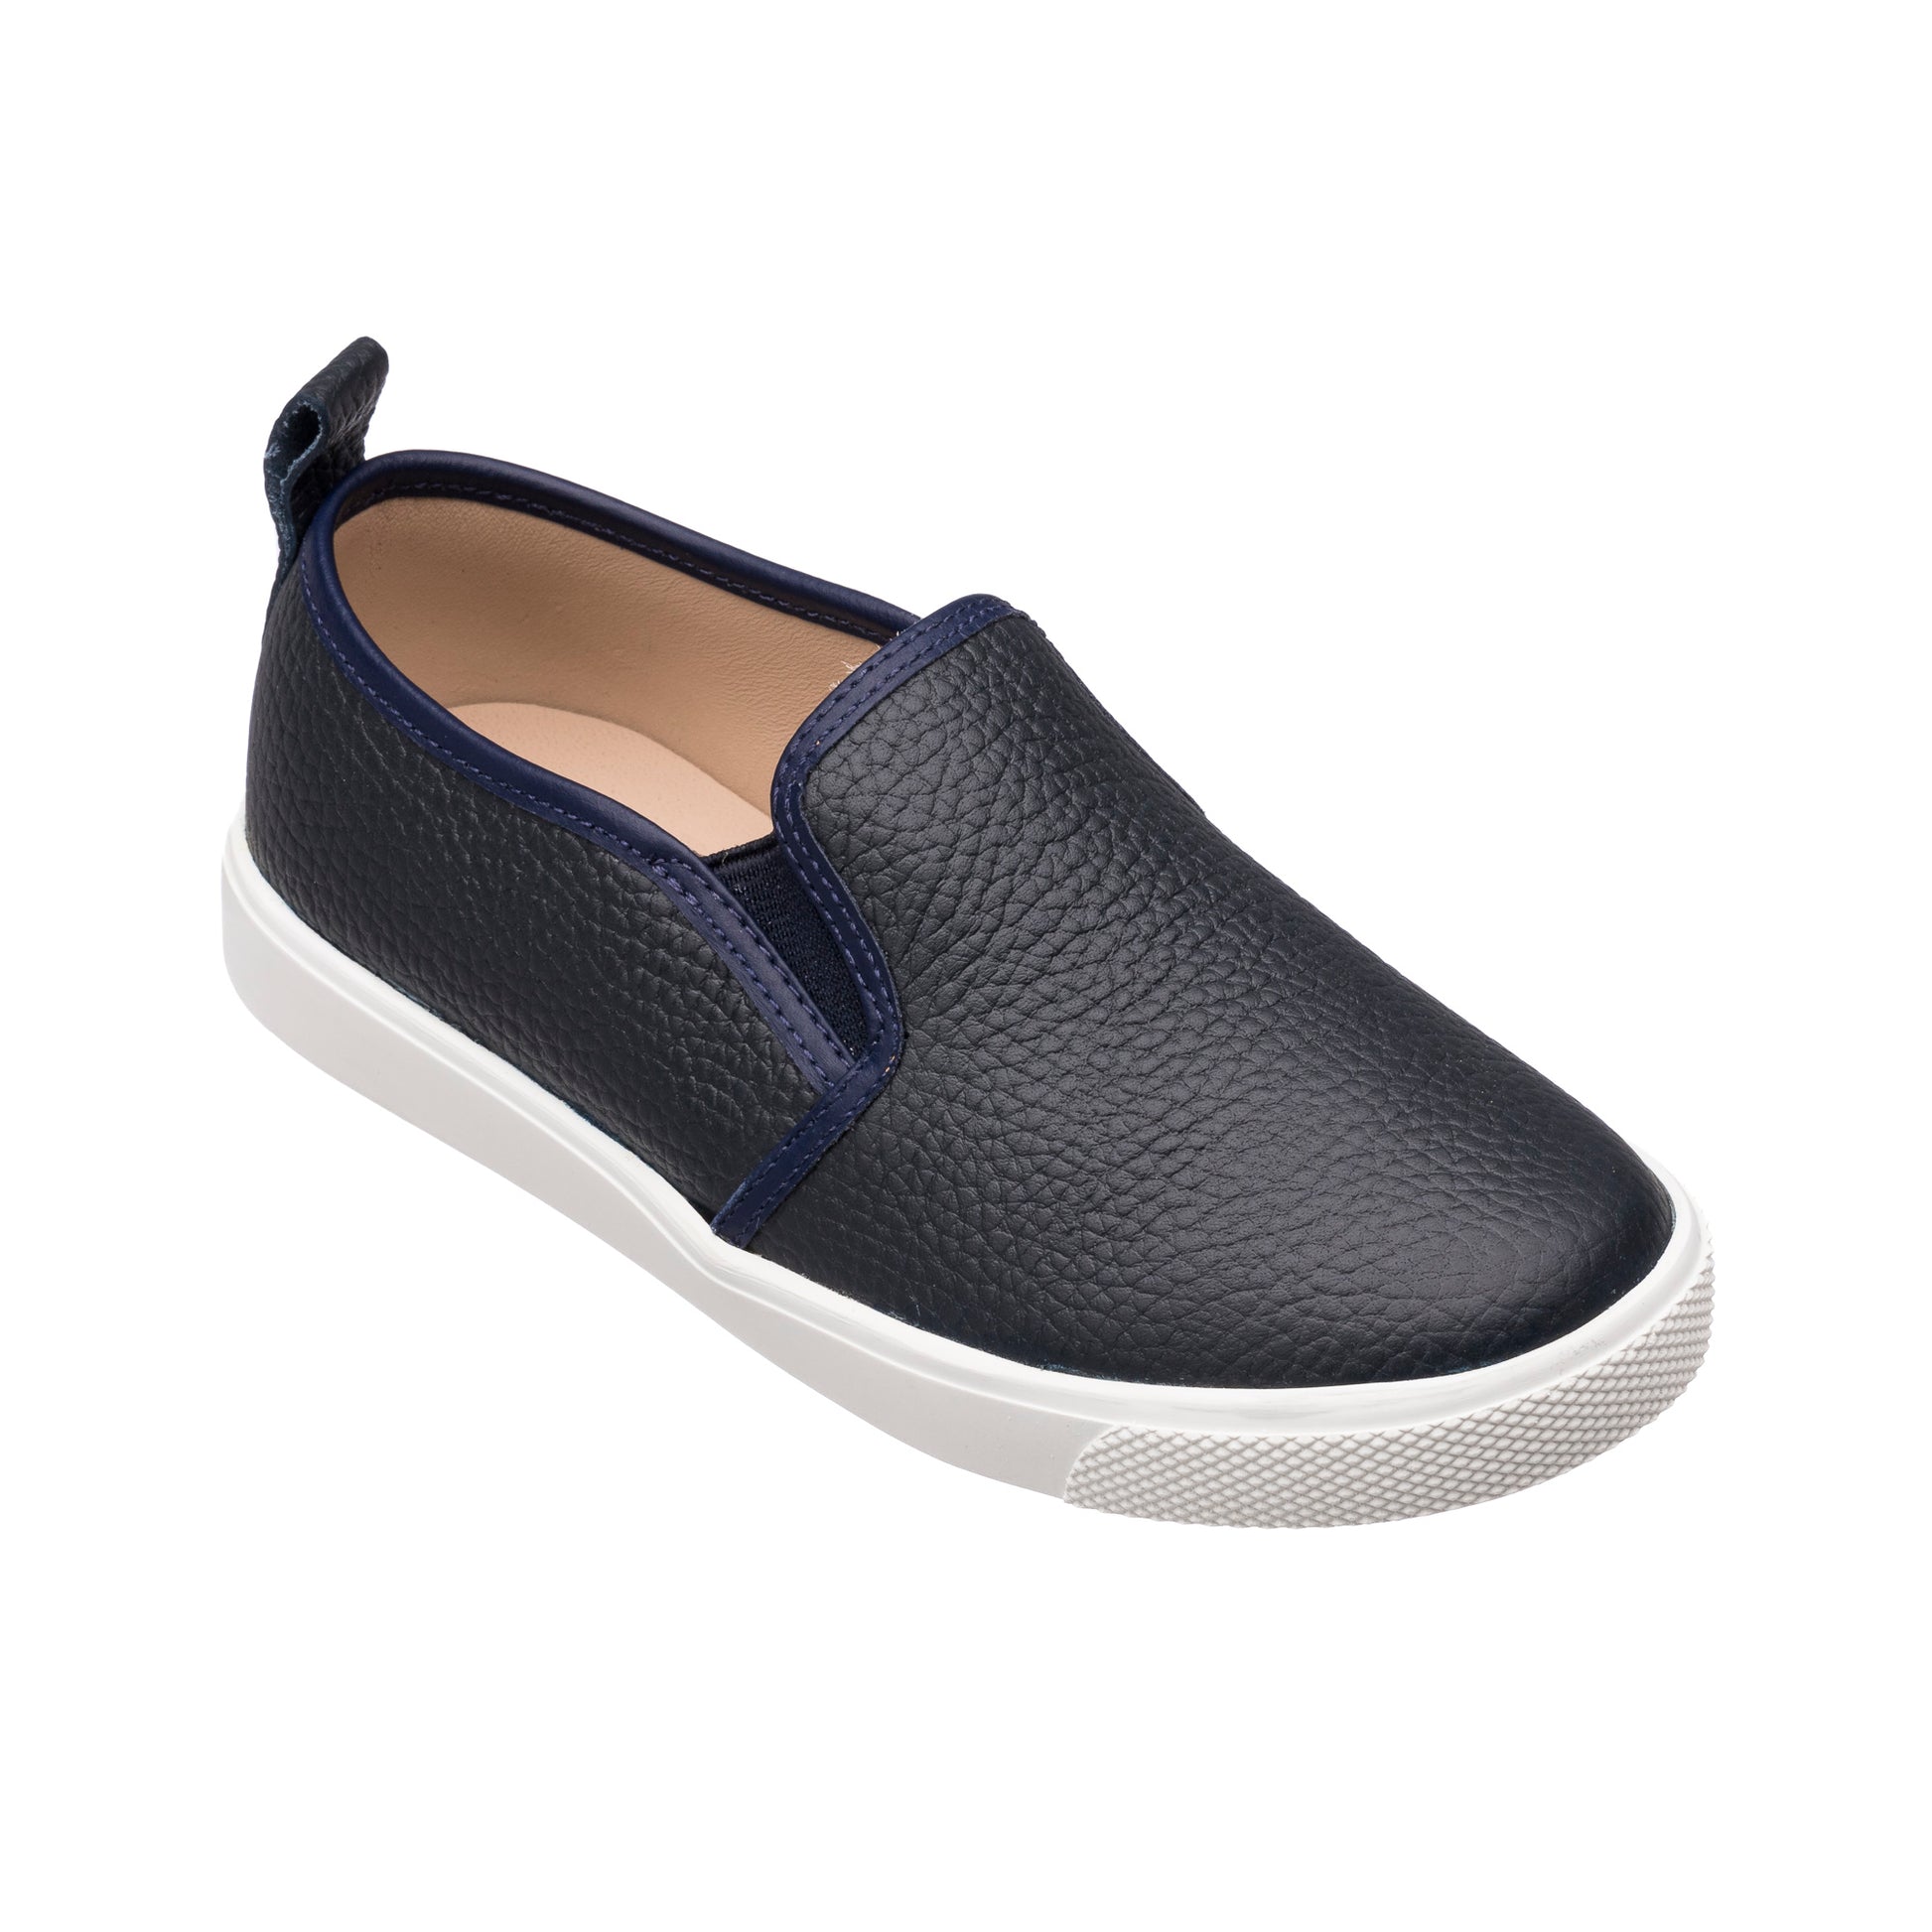 Elephantito Blue/Gray Slip-on Shoe - Tassel Children Shoes